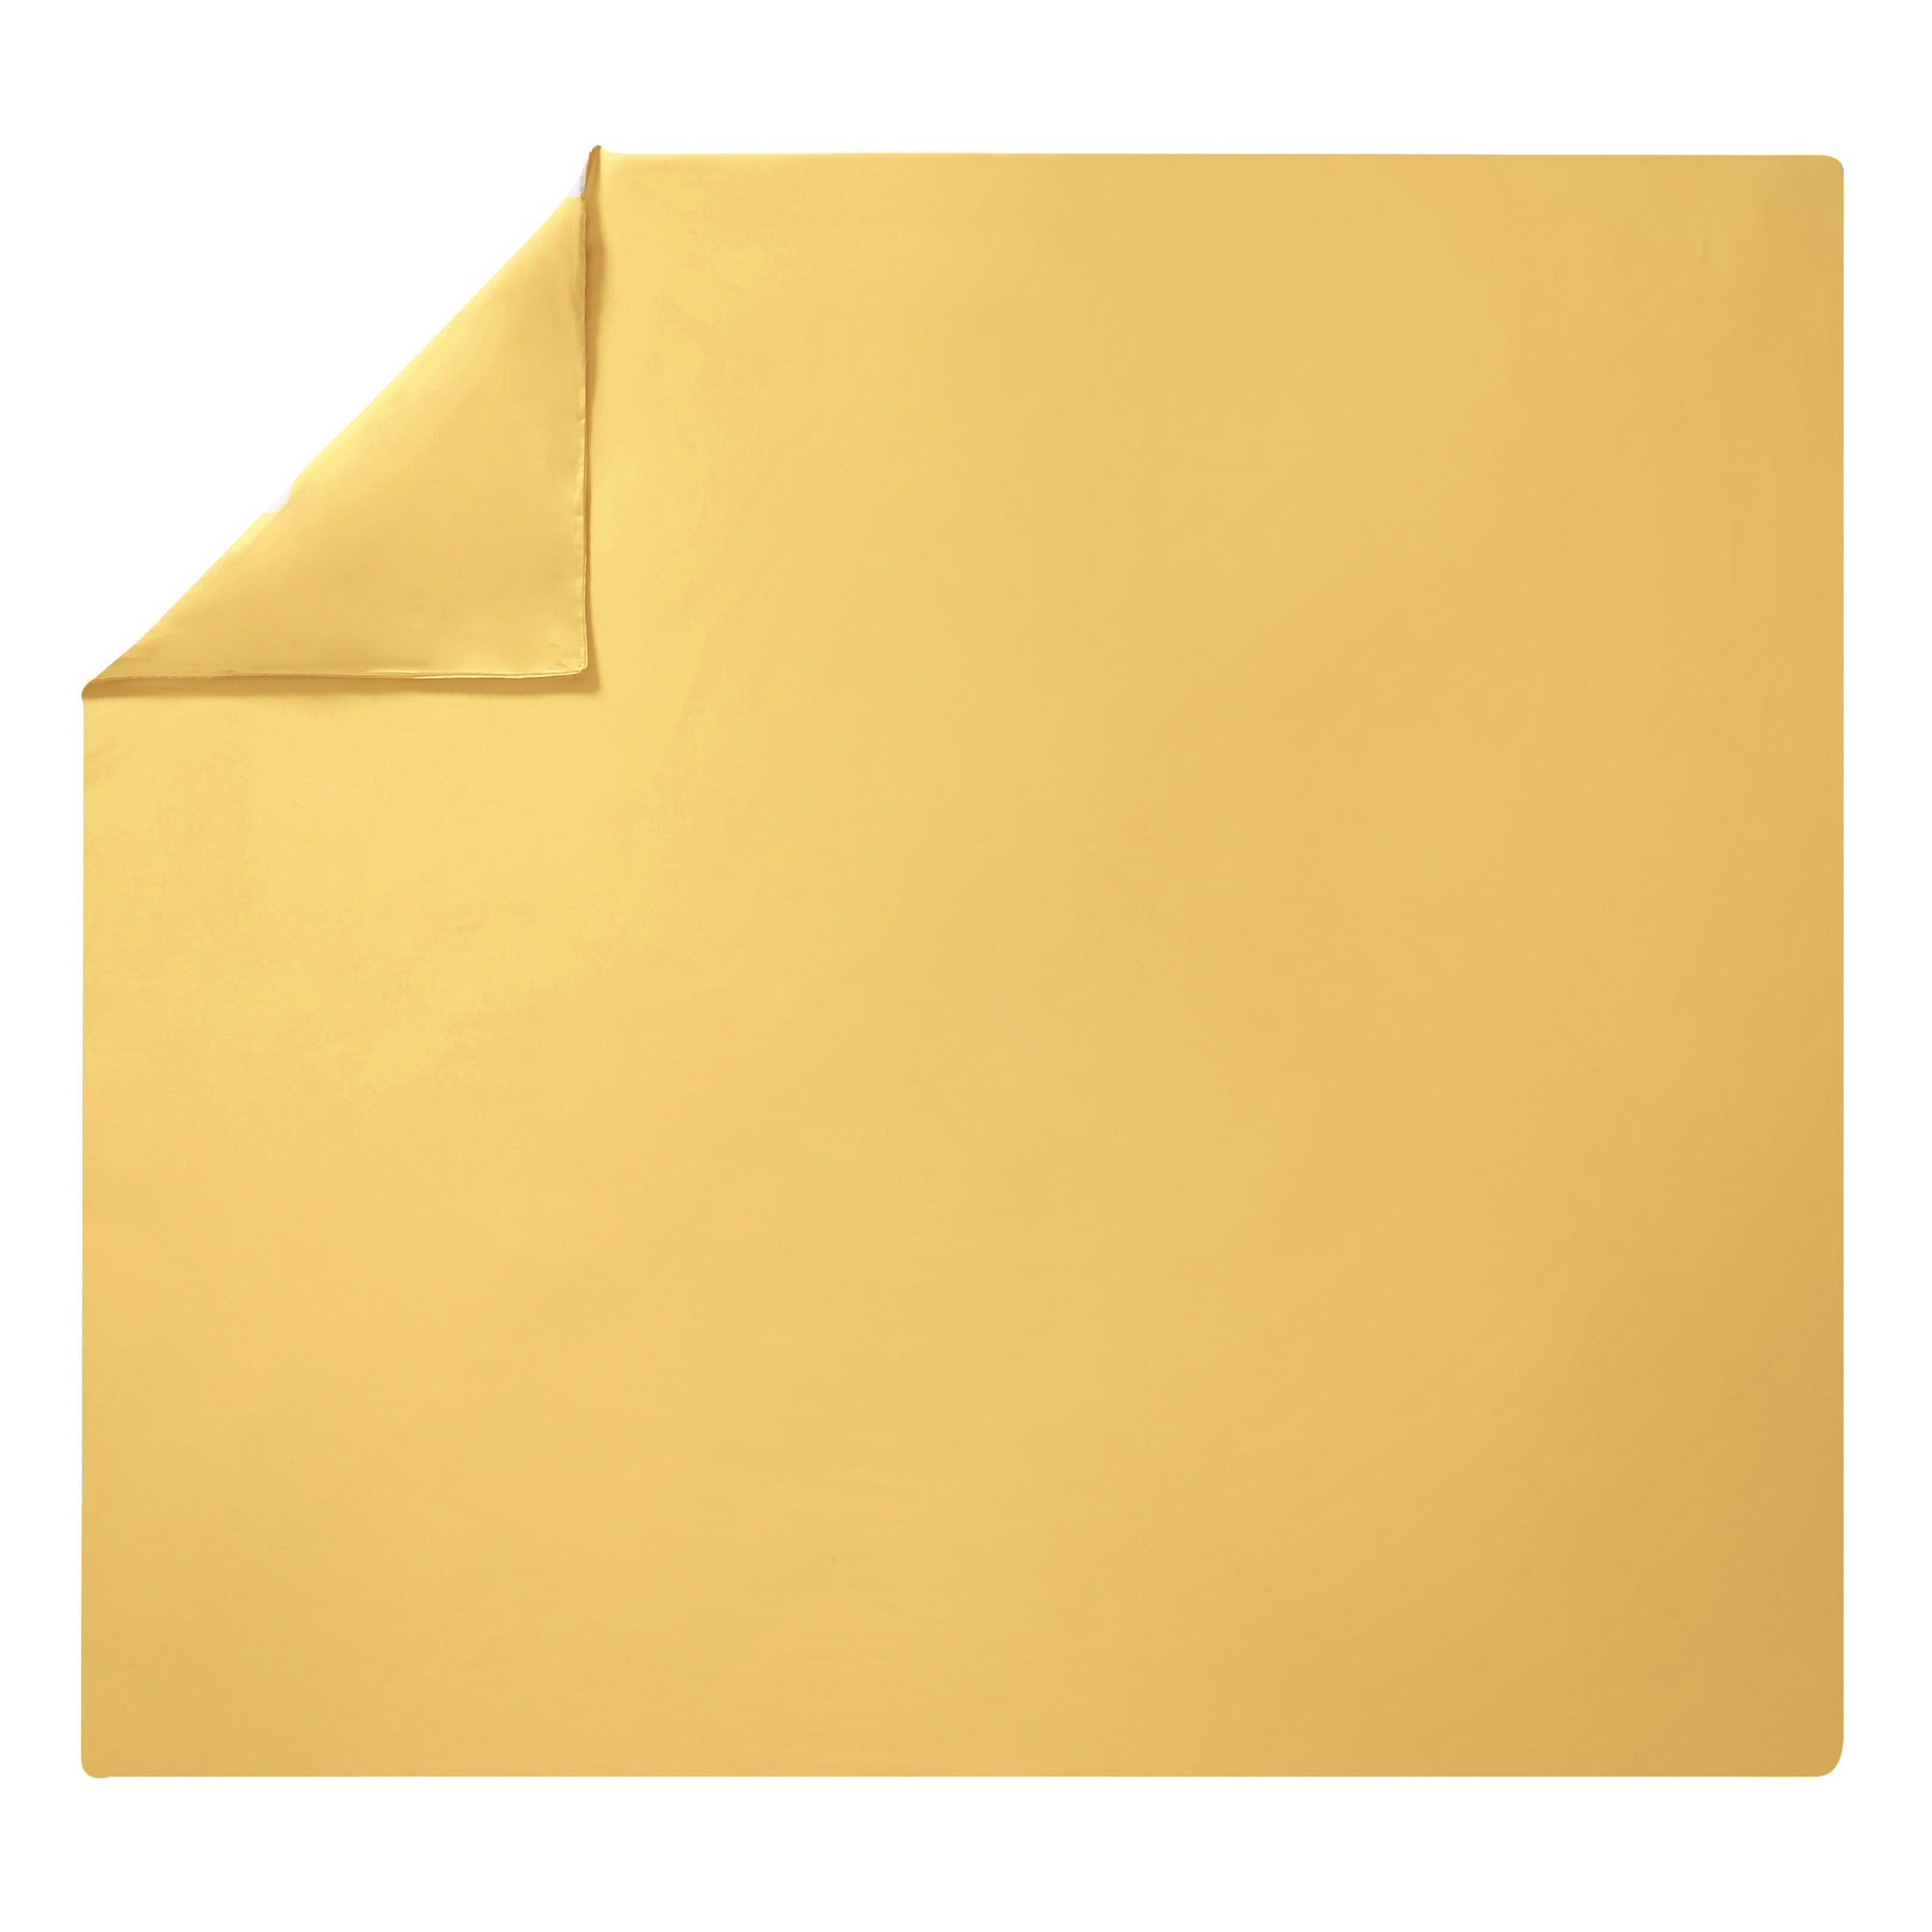 Fig Linens - Alexandre Turpault Bedding - Teo Gold Sheet